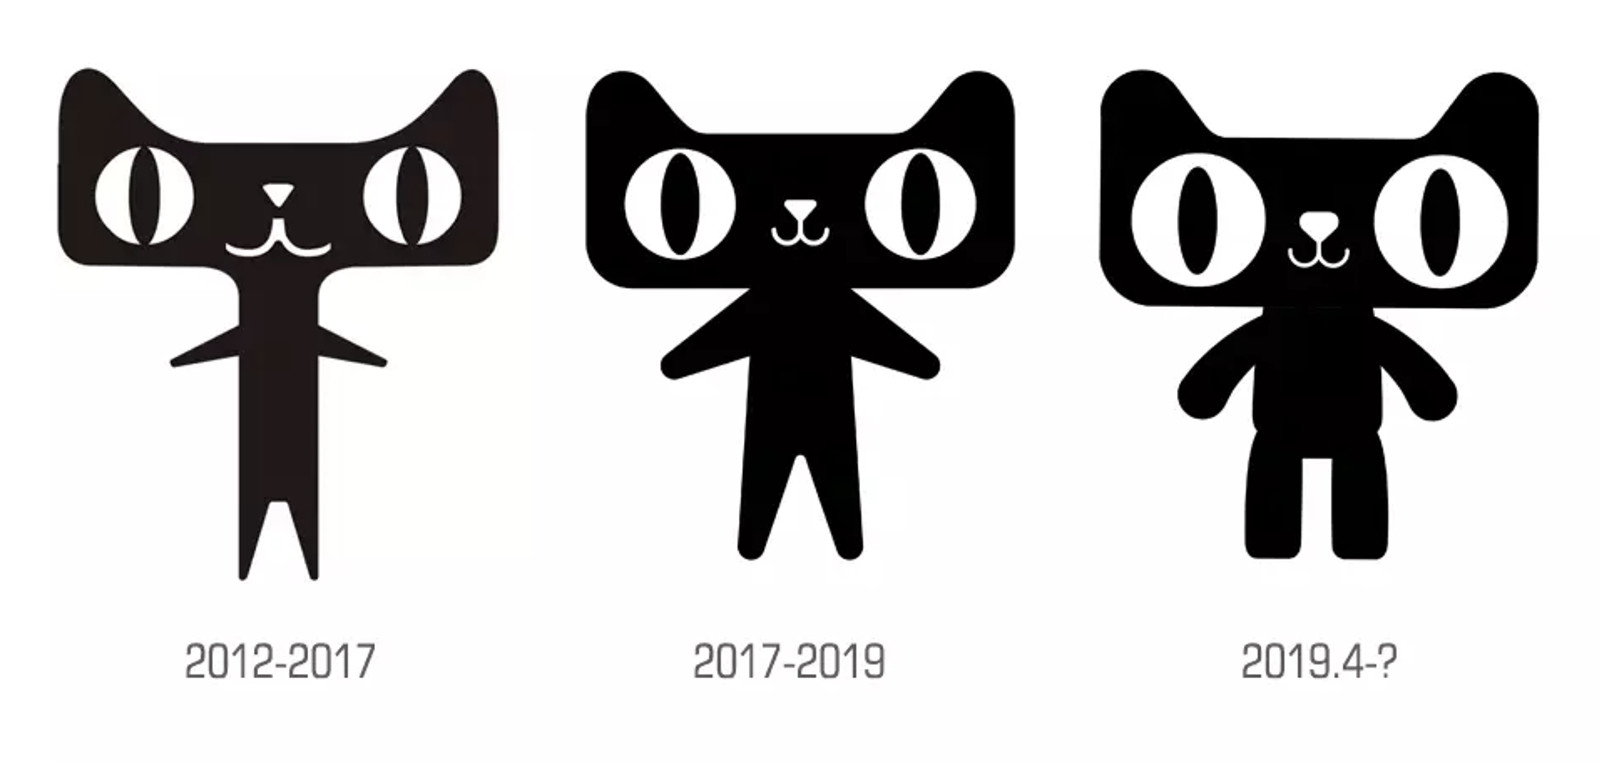 天猫猫头10年进化之路这就是品牌的超级符号